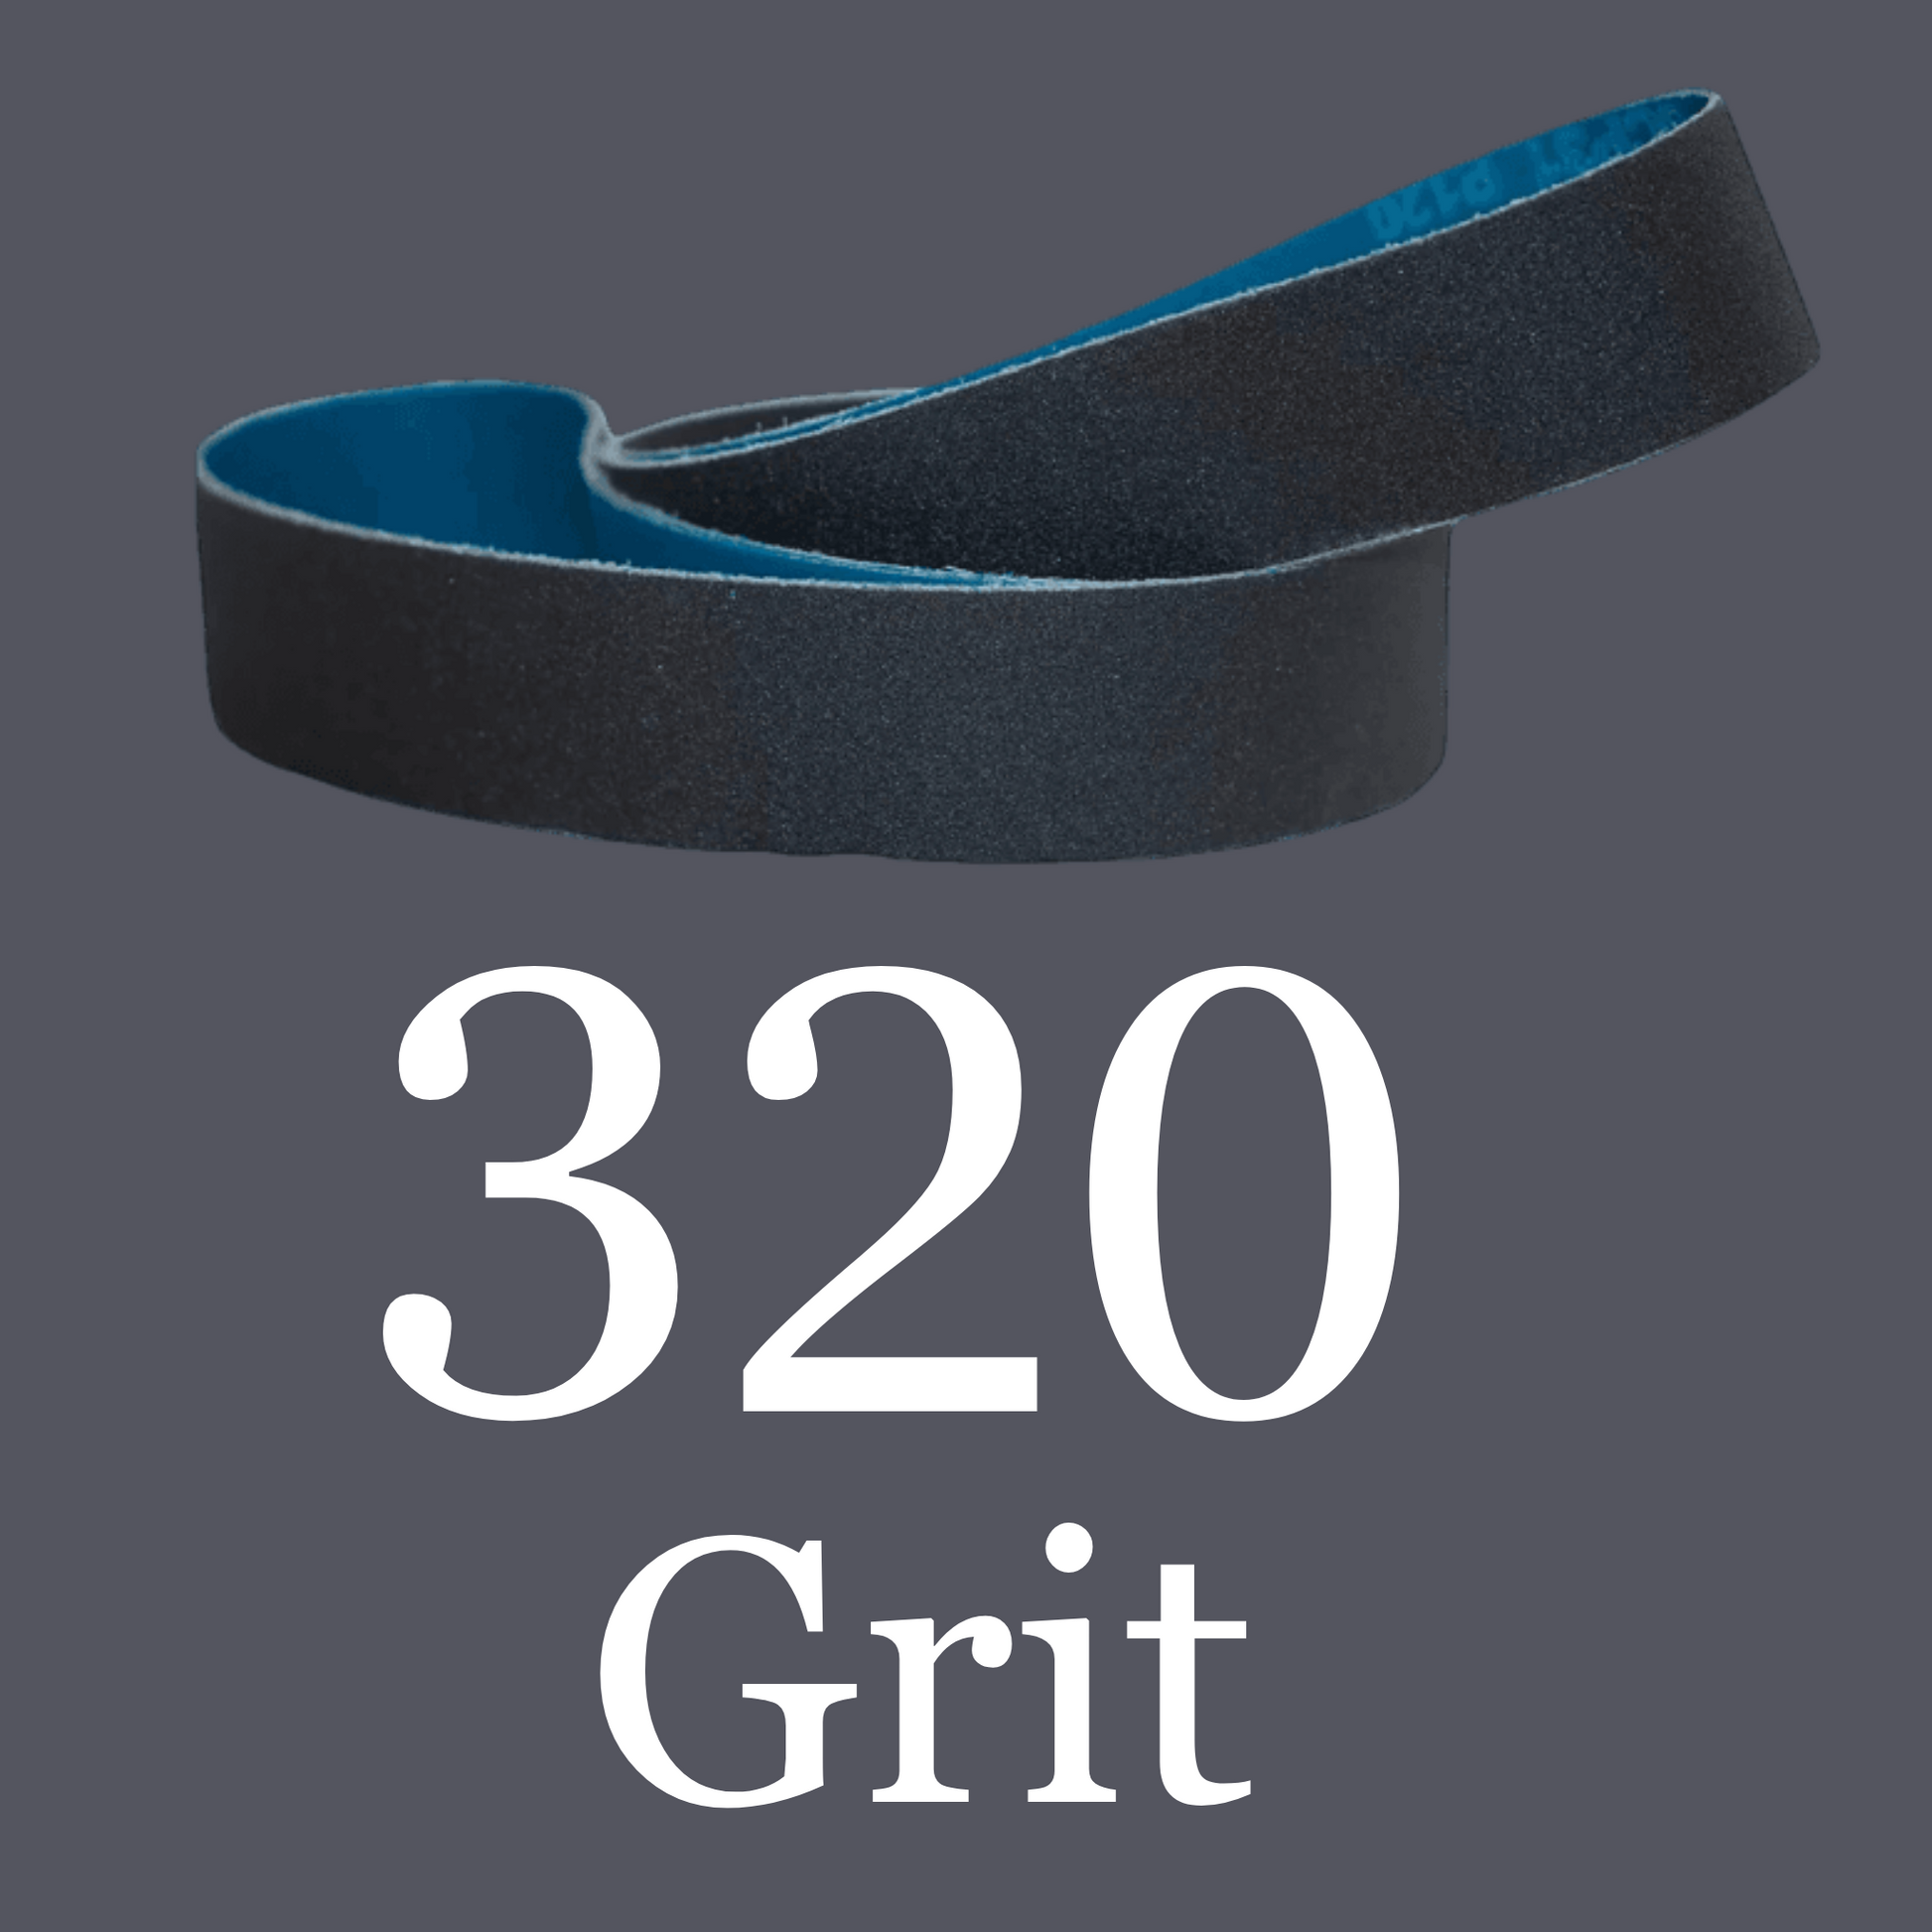 2” x 72” Premium Black Silicon Carbide “Y” Belts 320 Grit